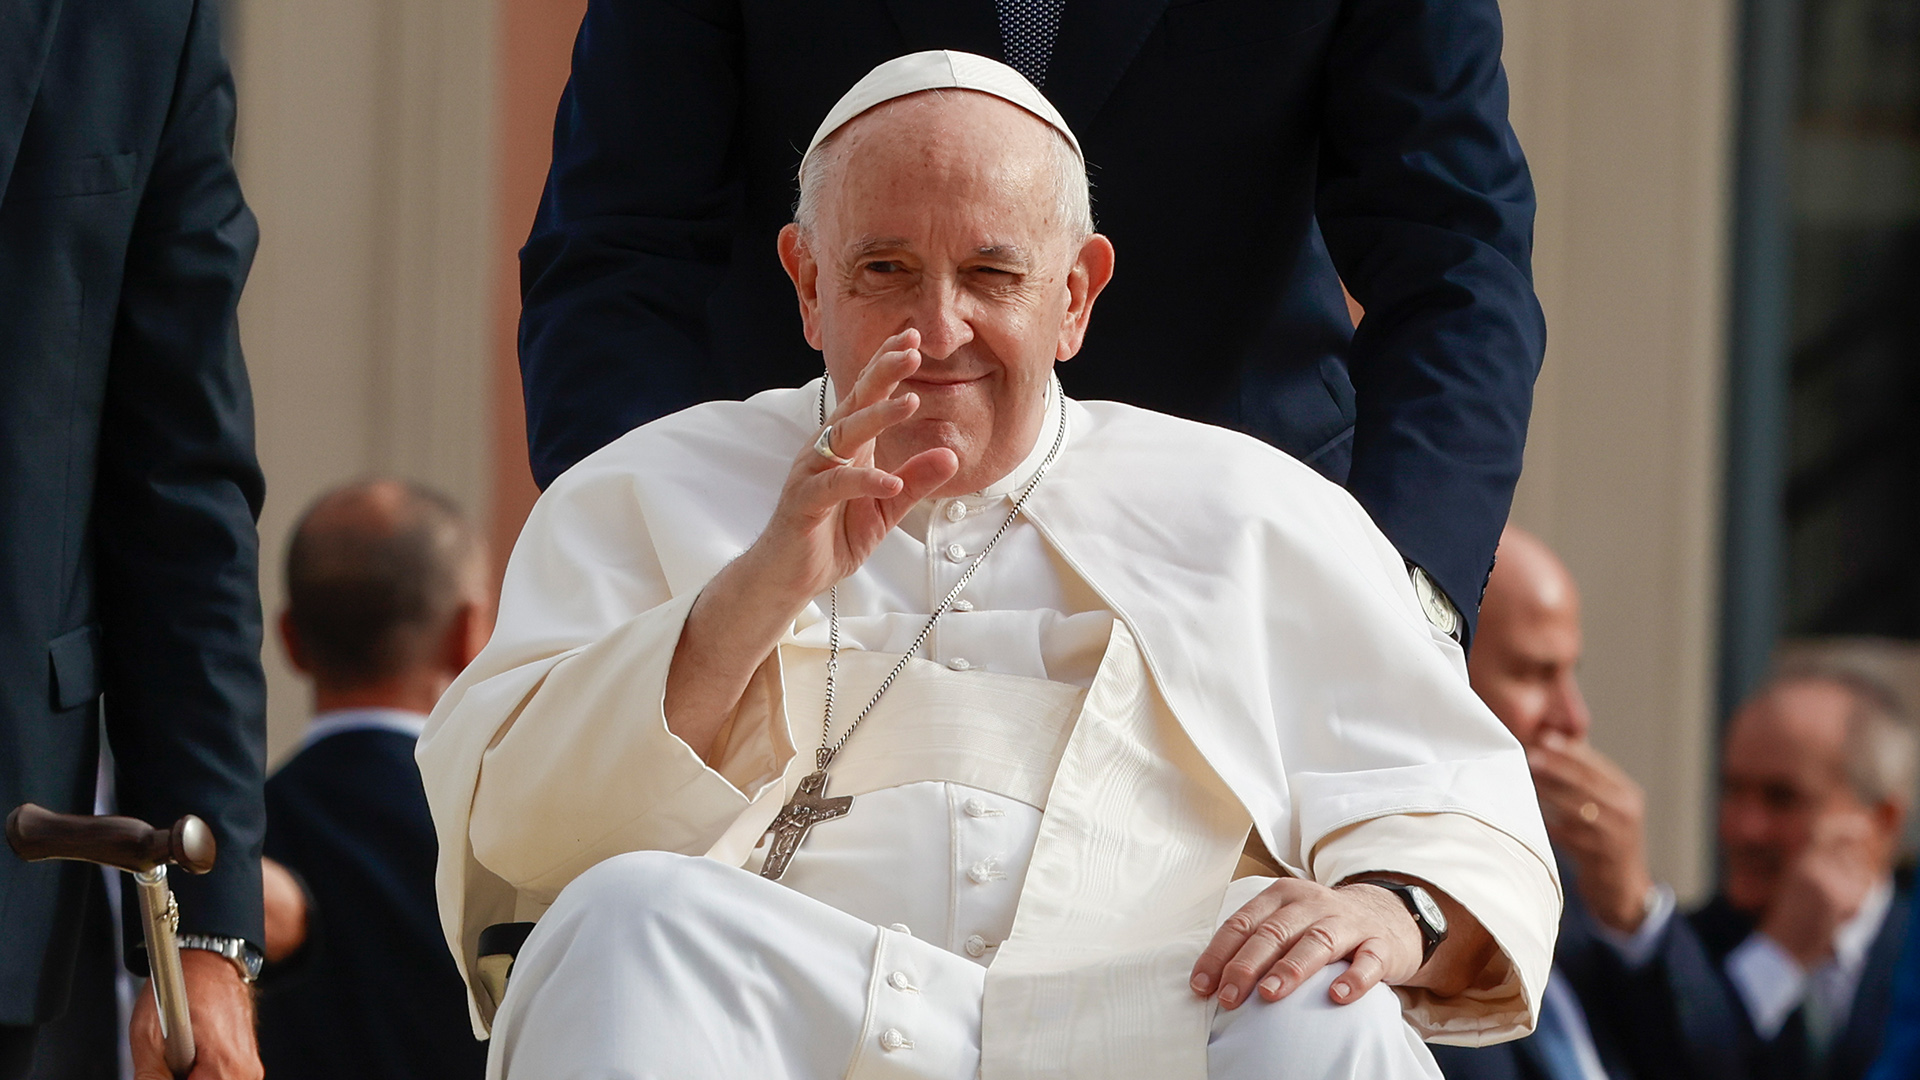 Papst Franziskus kommt zu einem Treffen mit Angehörigen der Opfer des Erdbebens von 2009 in L'Aquila. | dpa